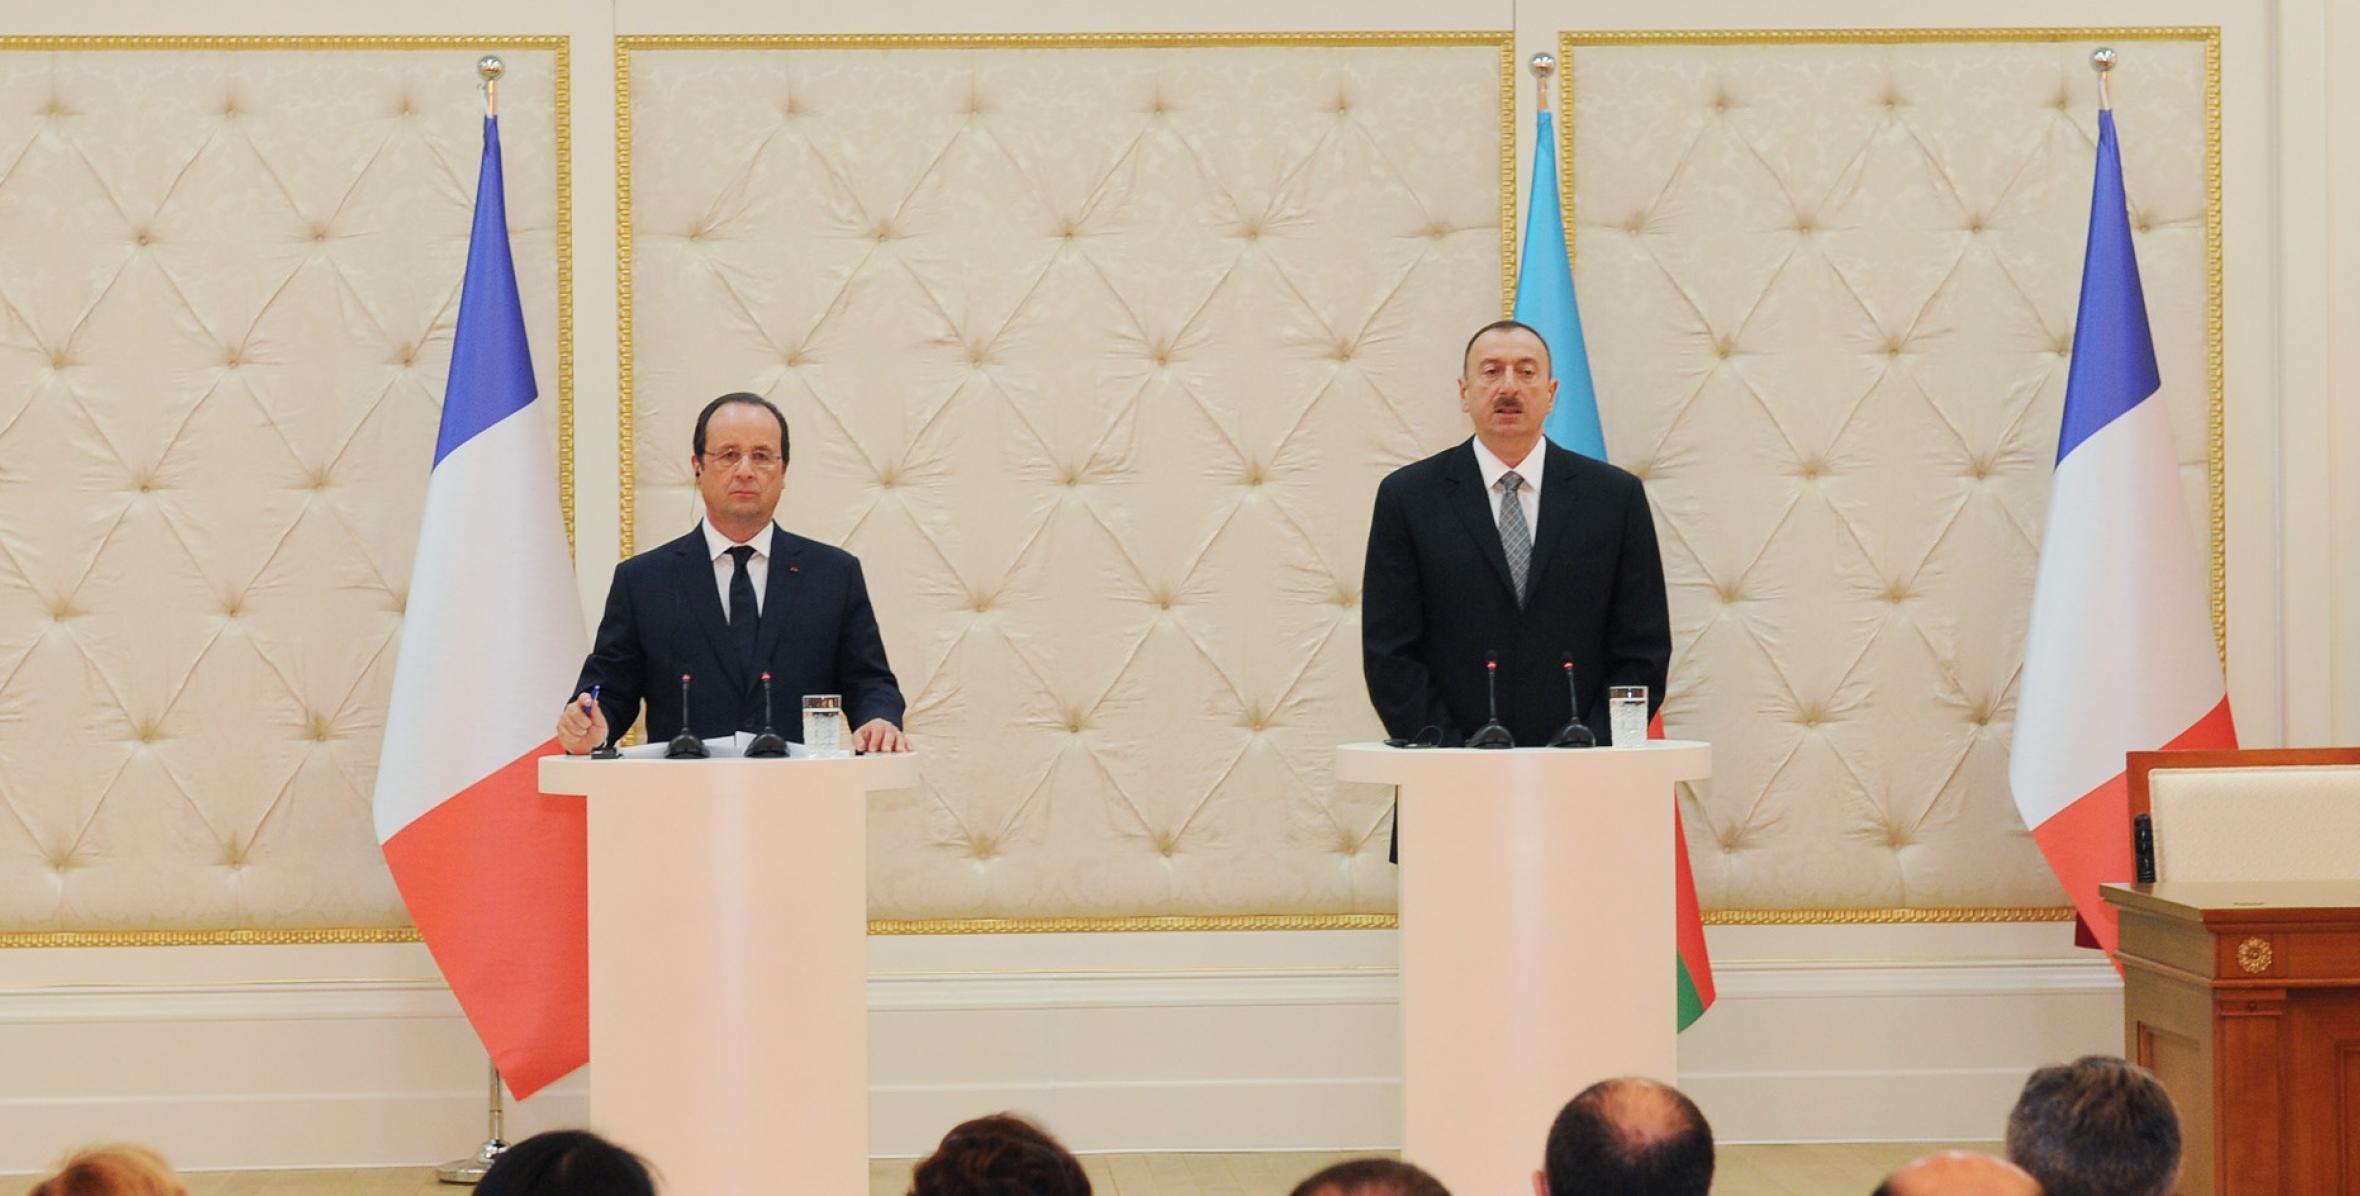 Состоялась пресс-конференция президентов Азербайджана и Франции